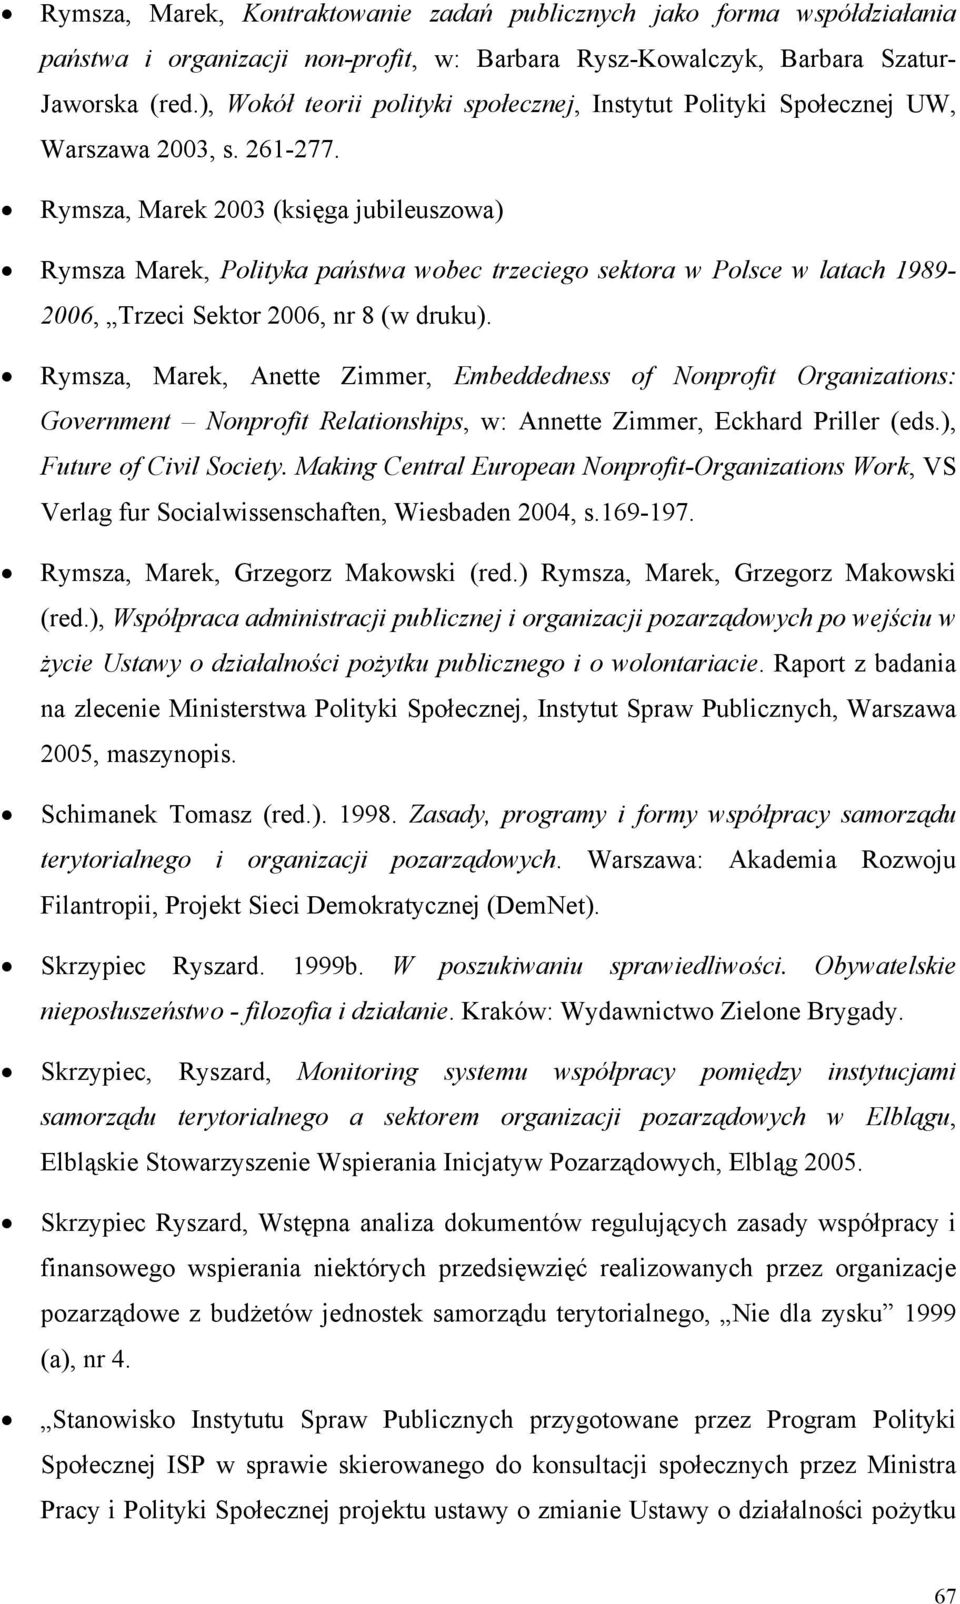 Rymsza, Marek 2003 (księga jubileuszowa) Rymsza Marek, Polityka państwa wobec trzeciego sektora w Polsce w latach 1989-2006, Trzeci Sektor 2006, nr 8 (w druku).